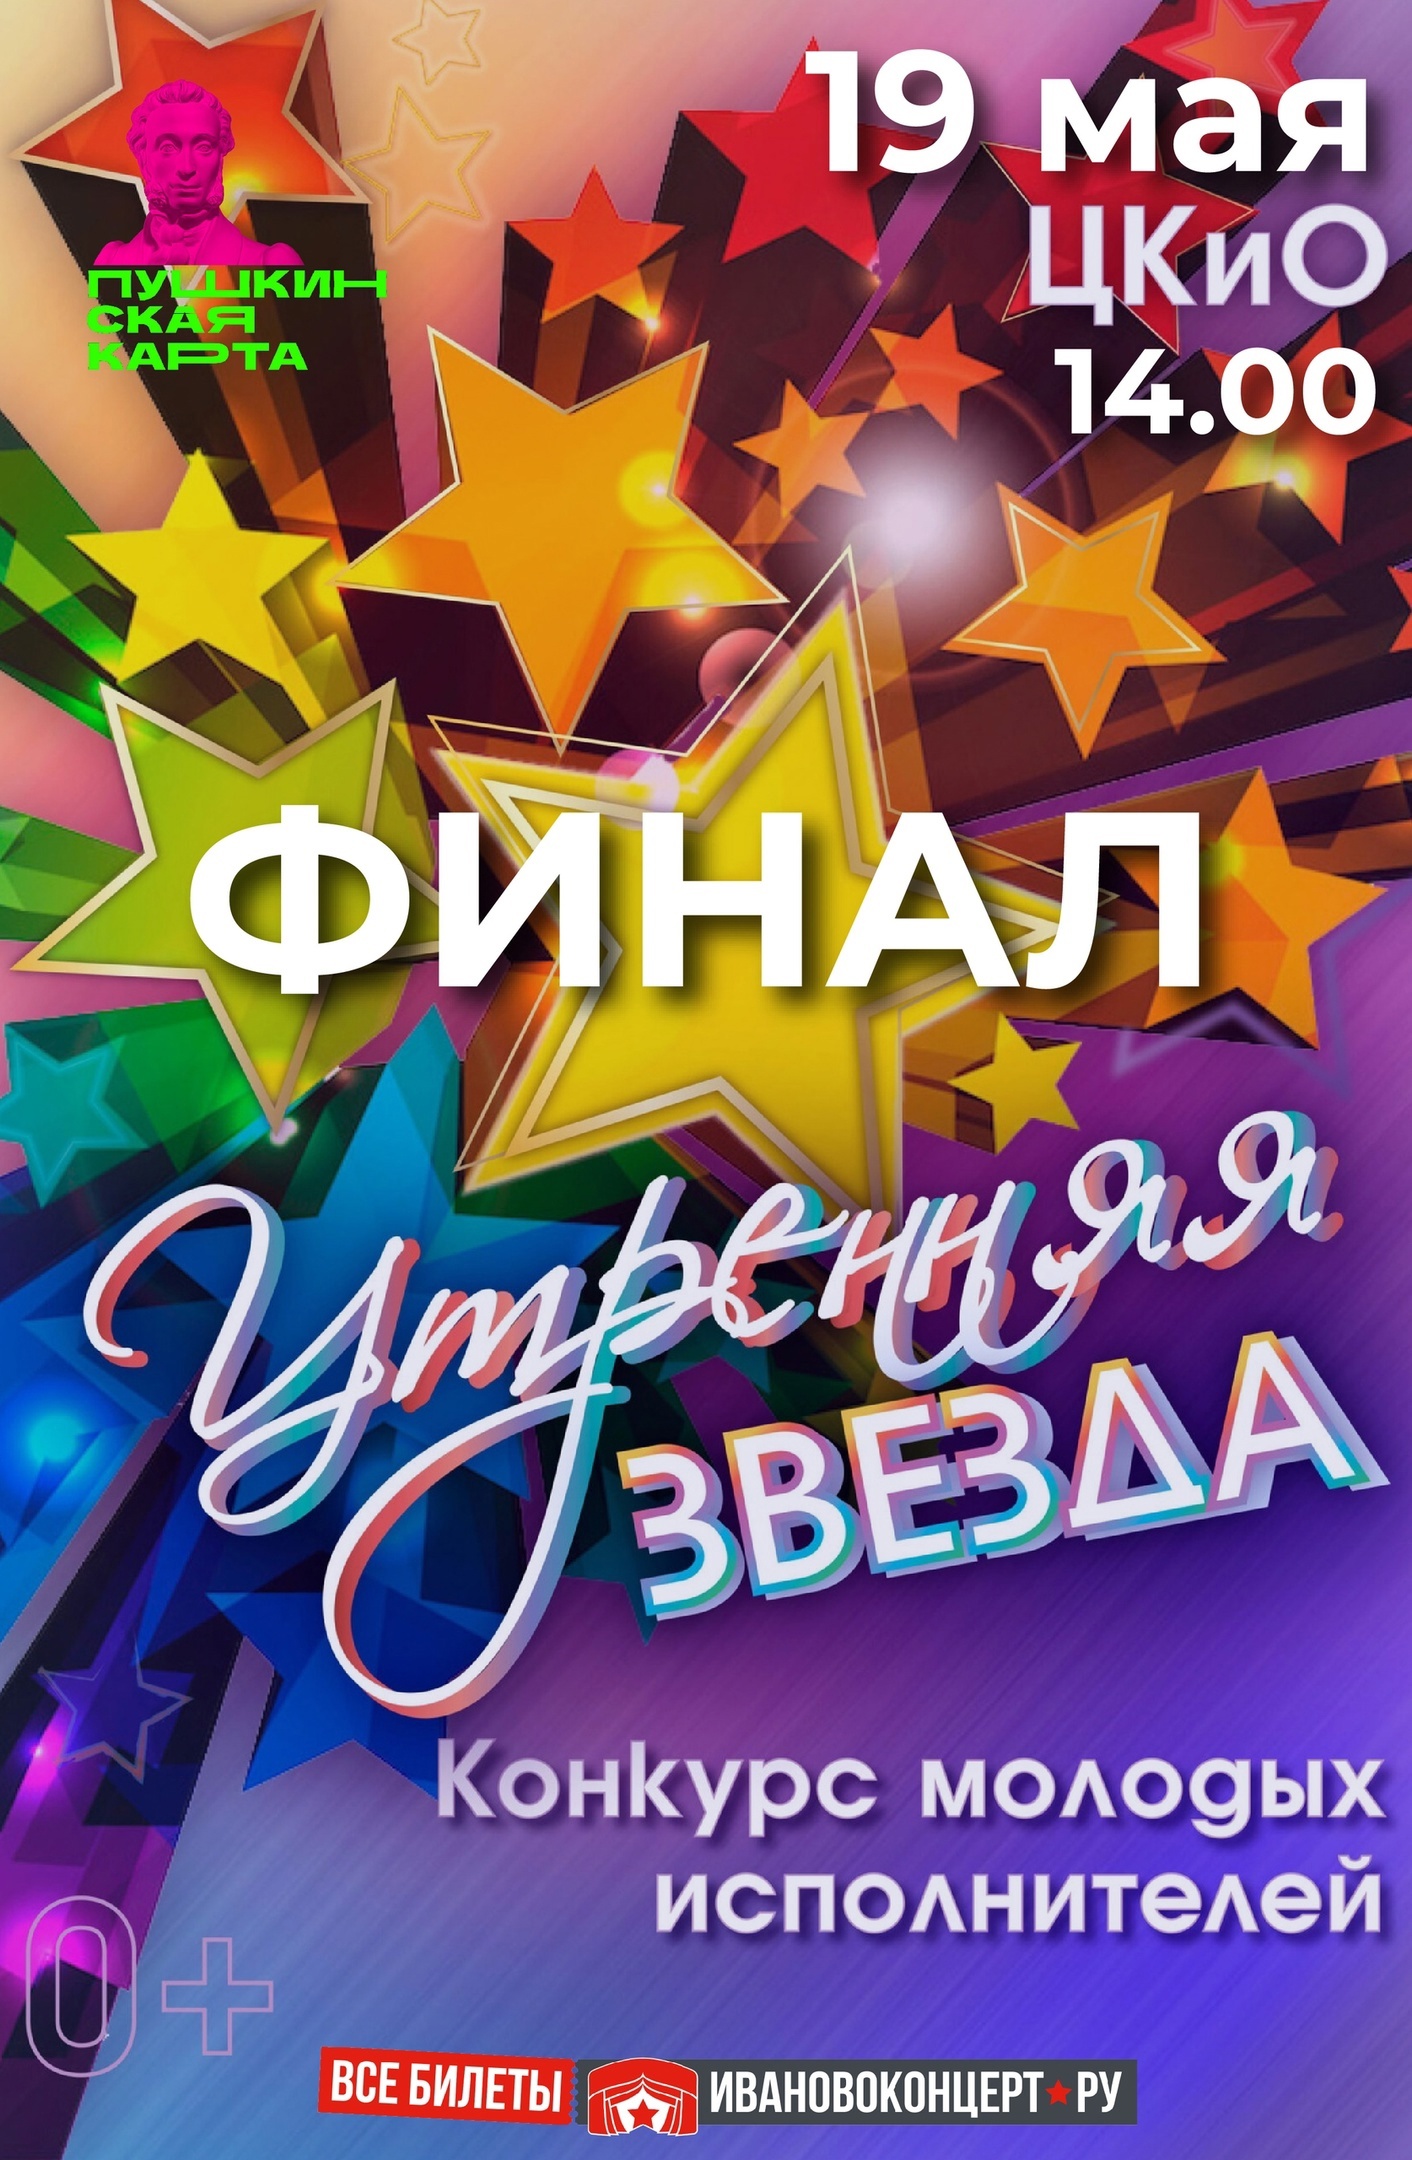 Центр культуры и отдыха города Иванова приглашает на финал конкурса «Утренняя звезда».